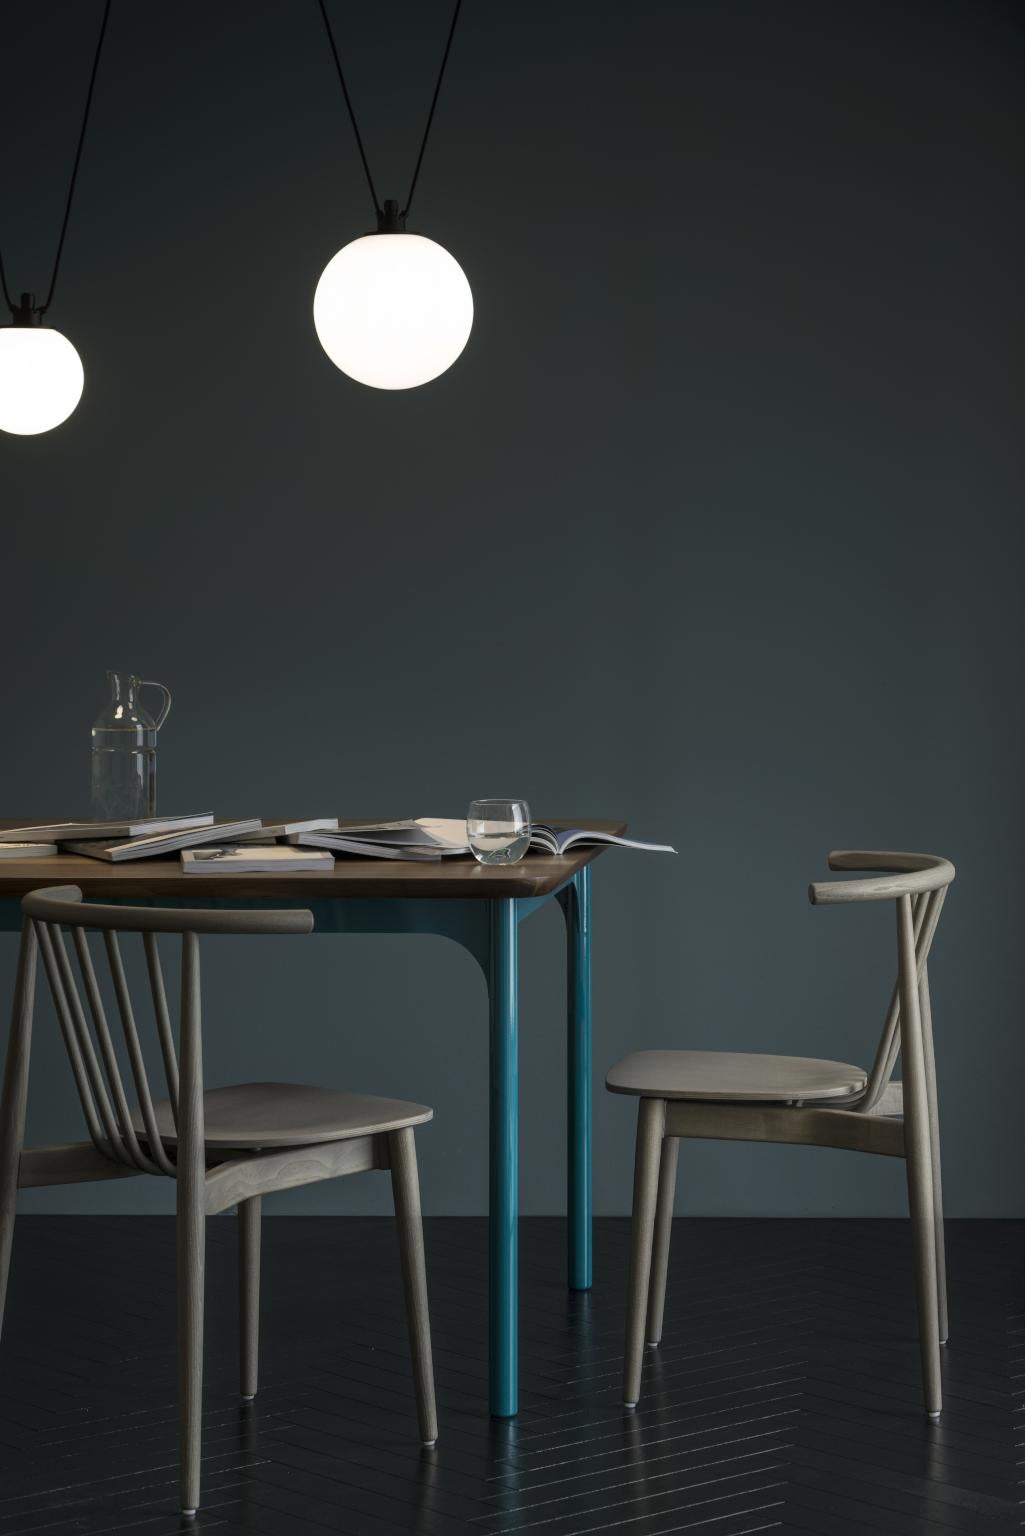 Filet/Tisch
Fillet ist ein bequemer und praktischer Tisch, bei dem alle Flächen leicht verjüngt sind.
Die Massivholzplatte wird von den lackierten Metallbeinen mit geformtem Blech getragen
lasergeschnittene Querstreben, die dem Element